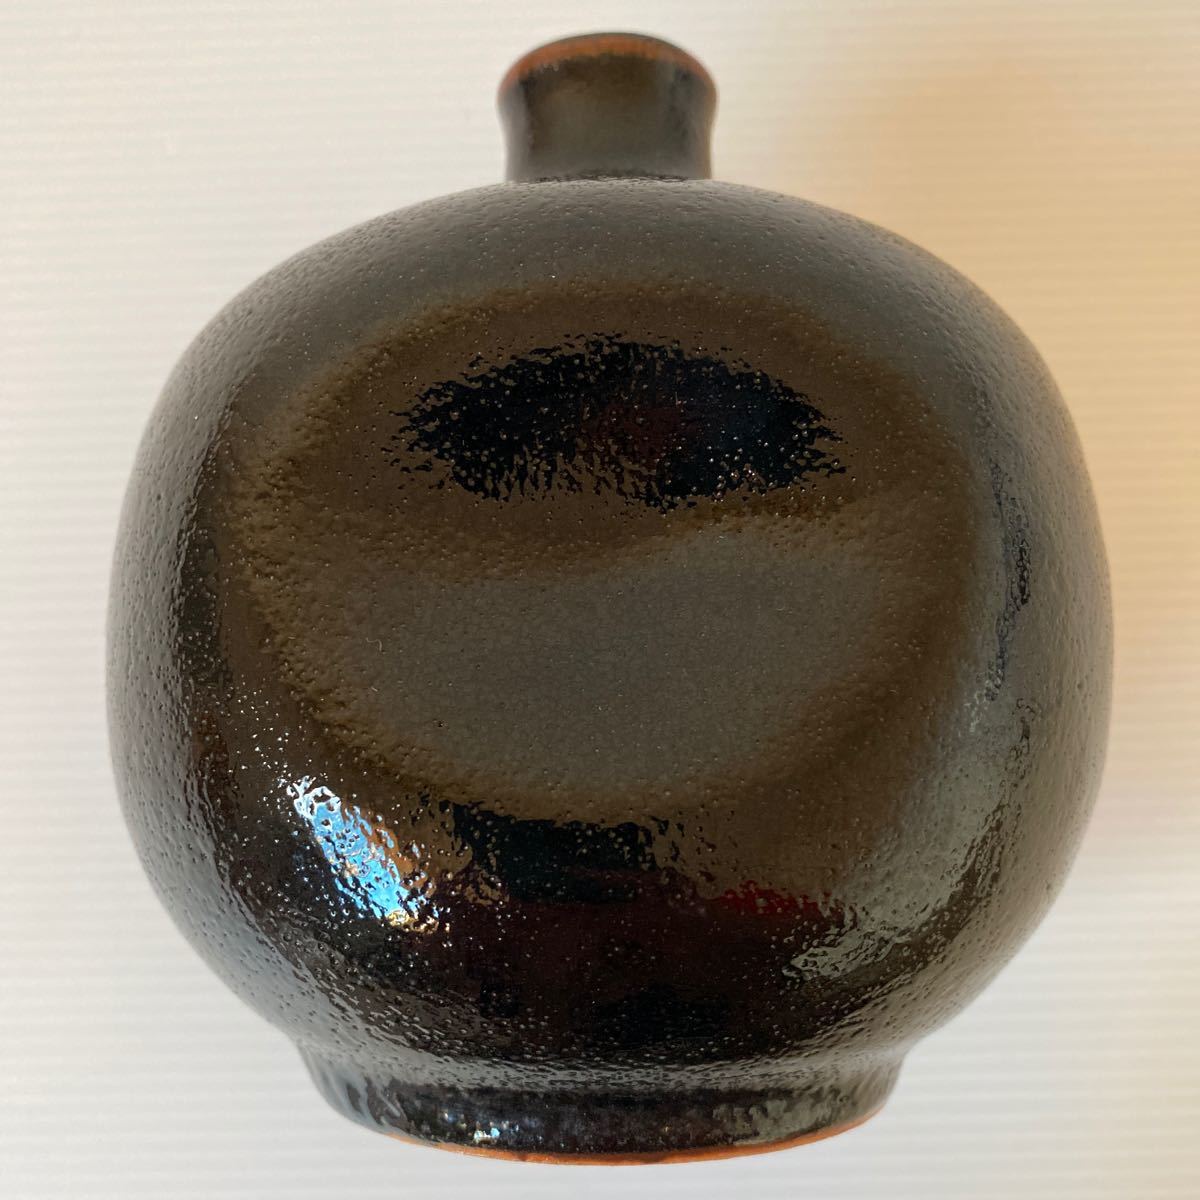  один колесо .. Satsuma shochu .. .. inserting предмет керамика содержание нет б/у ширина примерно 11.5× высота 12.5 ожоги чай одеколон считая . Silhouette ваза украшение 